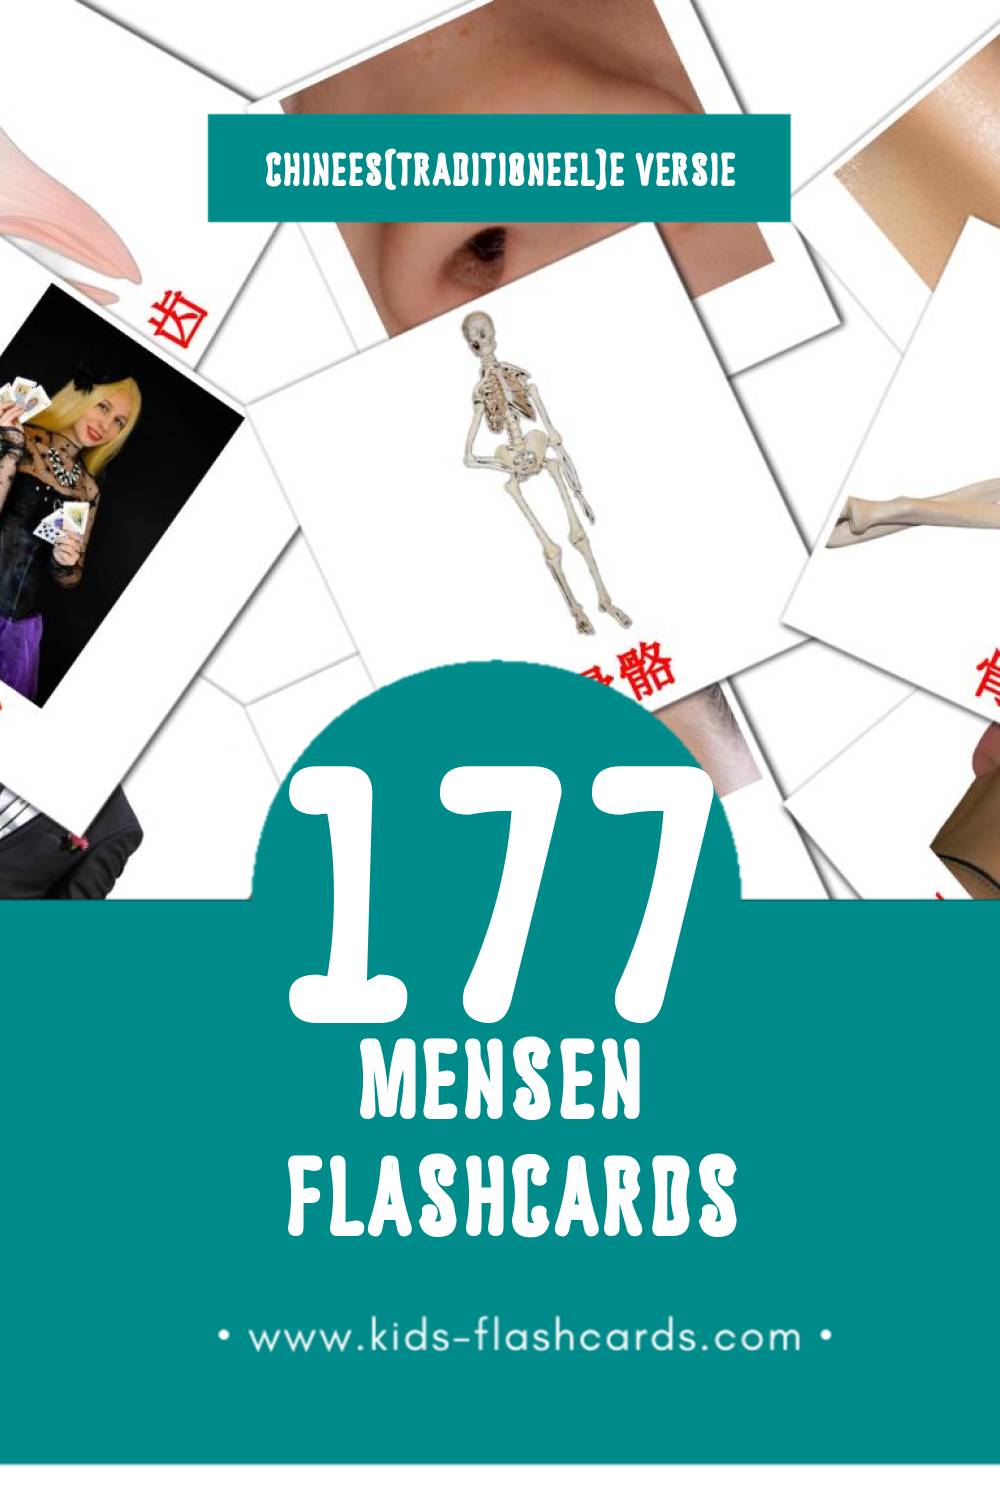 Visuele 人們 Flashcards voor Kleuters (177 kaarten in het Chinees(traditioneel))